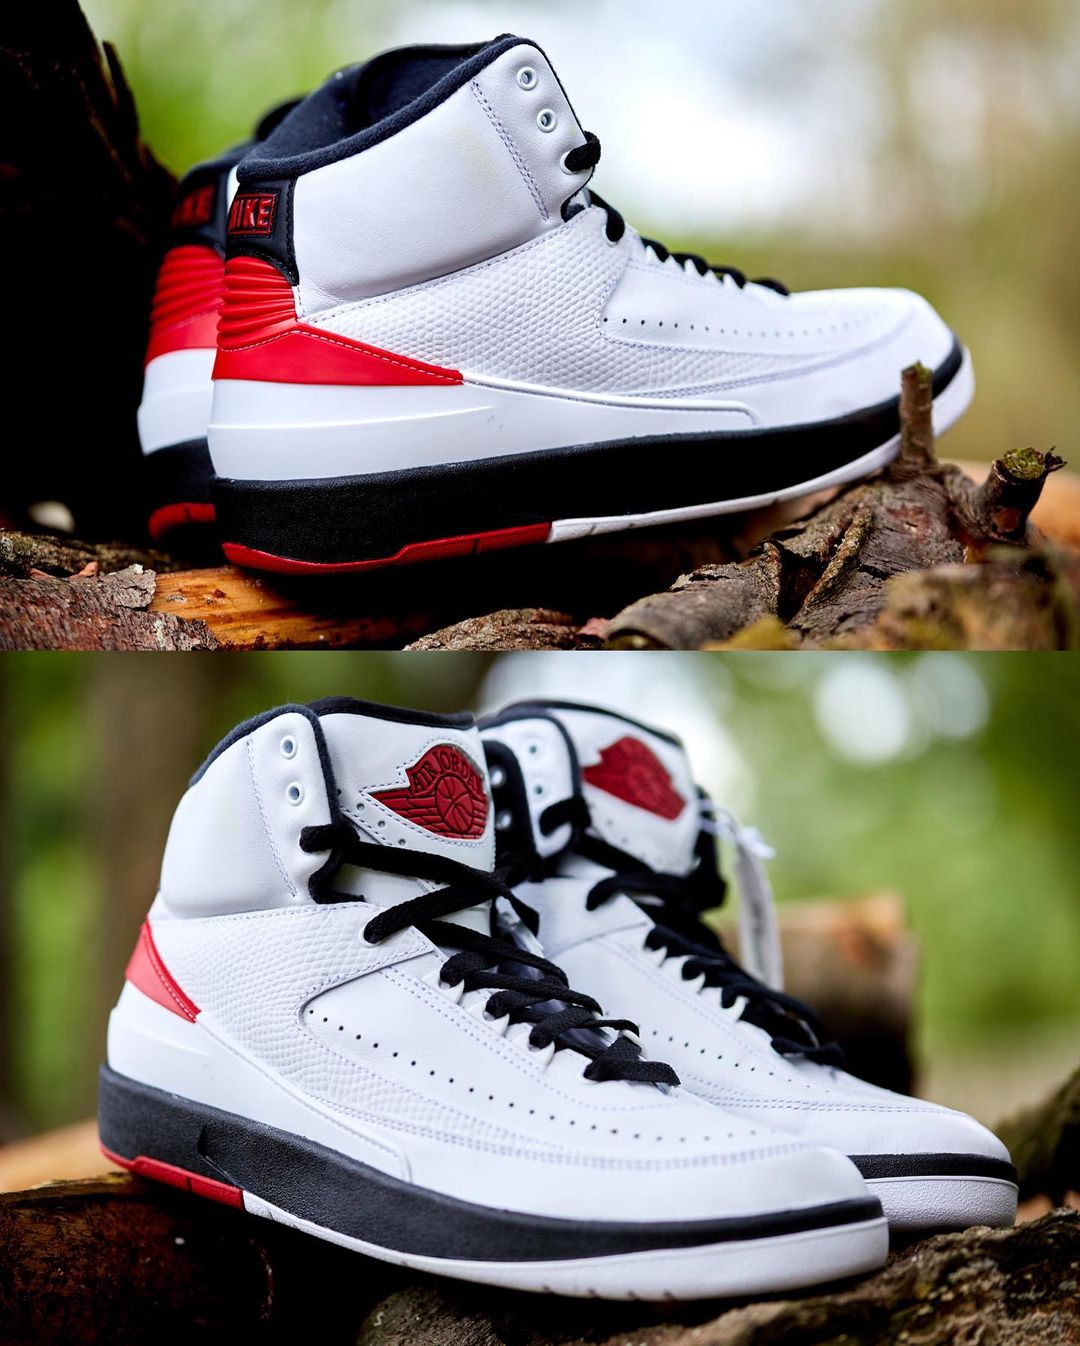 Nike Air Jordan 2 OG "Chicago" ナイキ メンズ